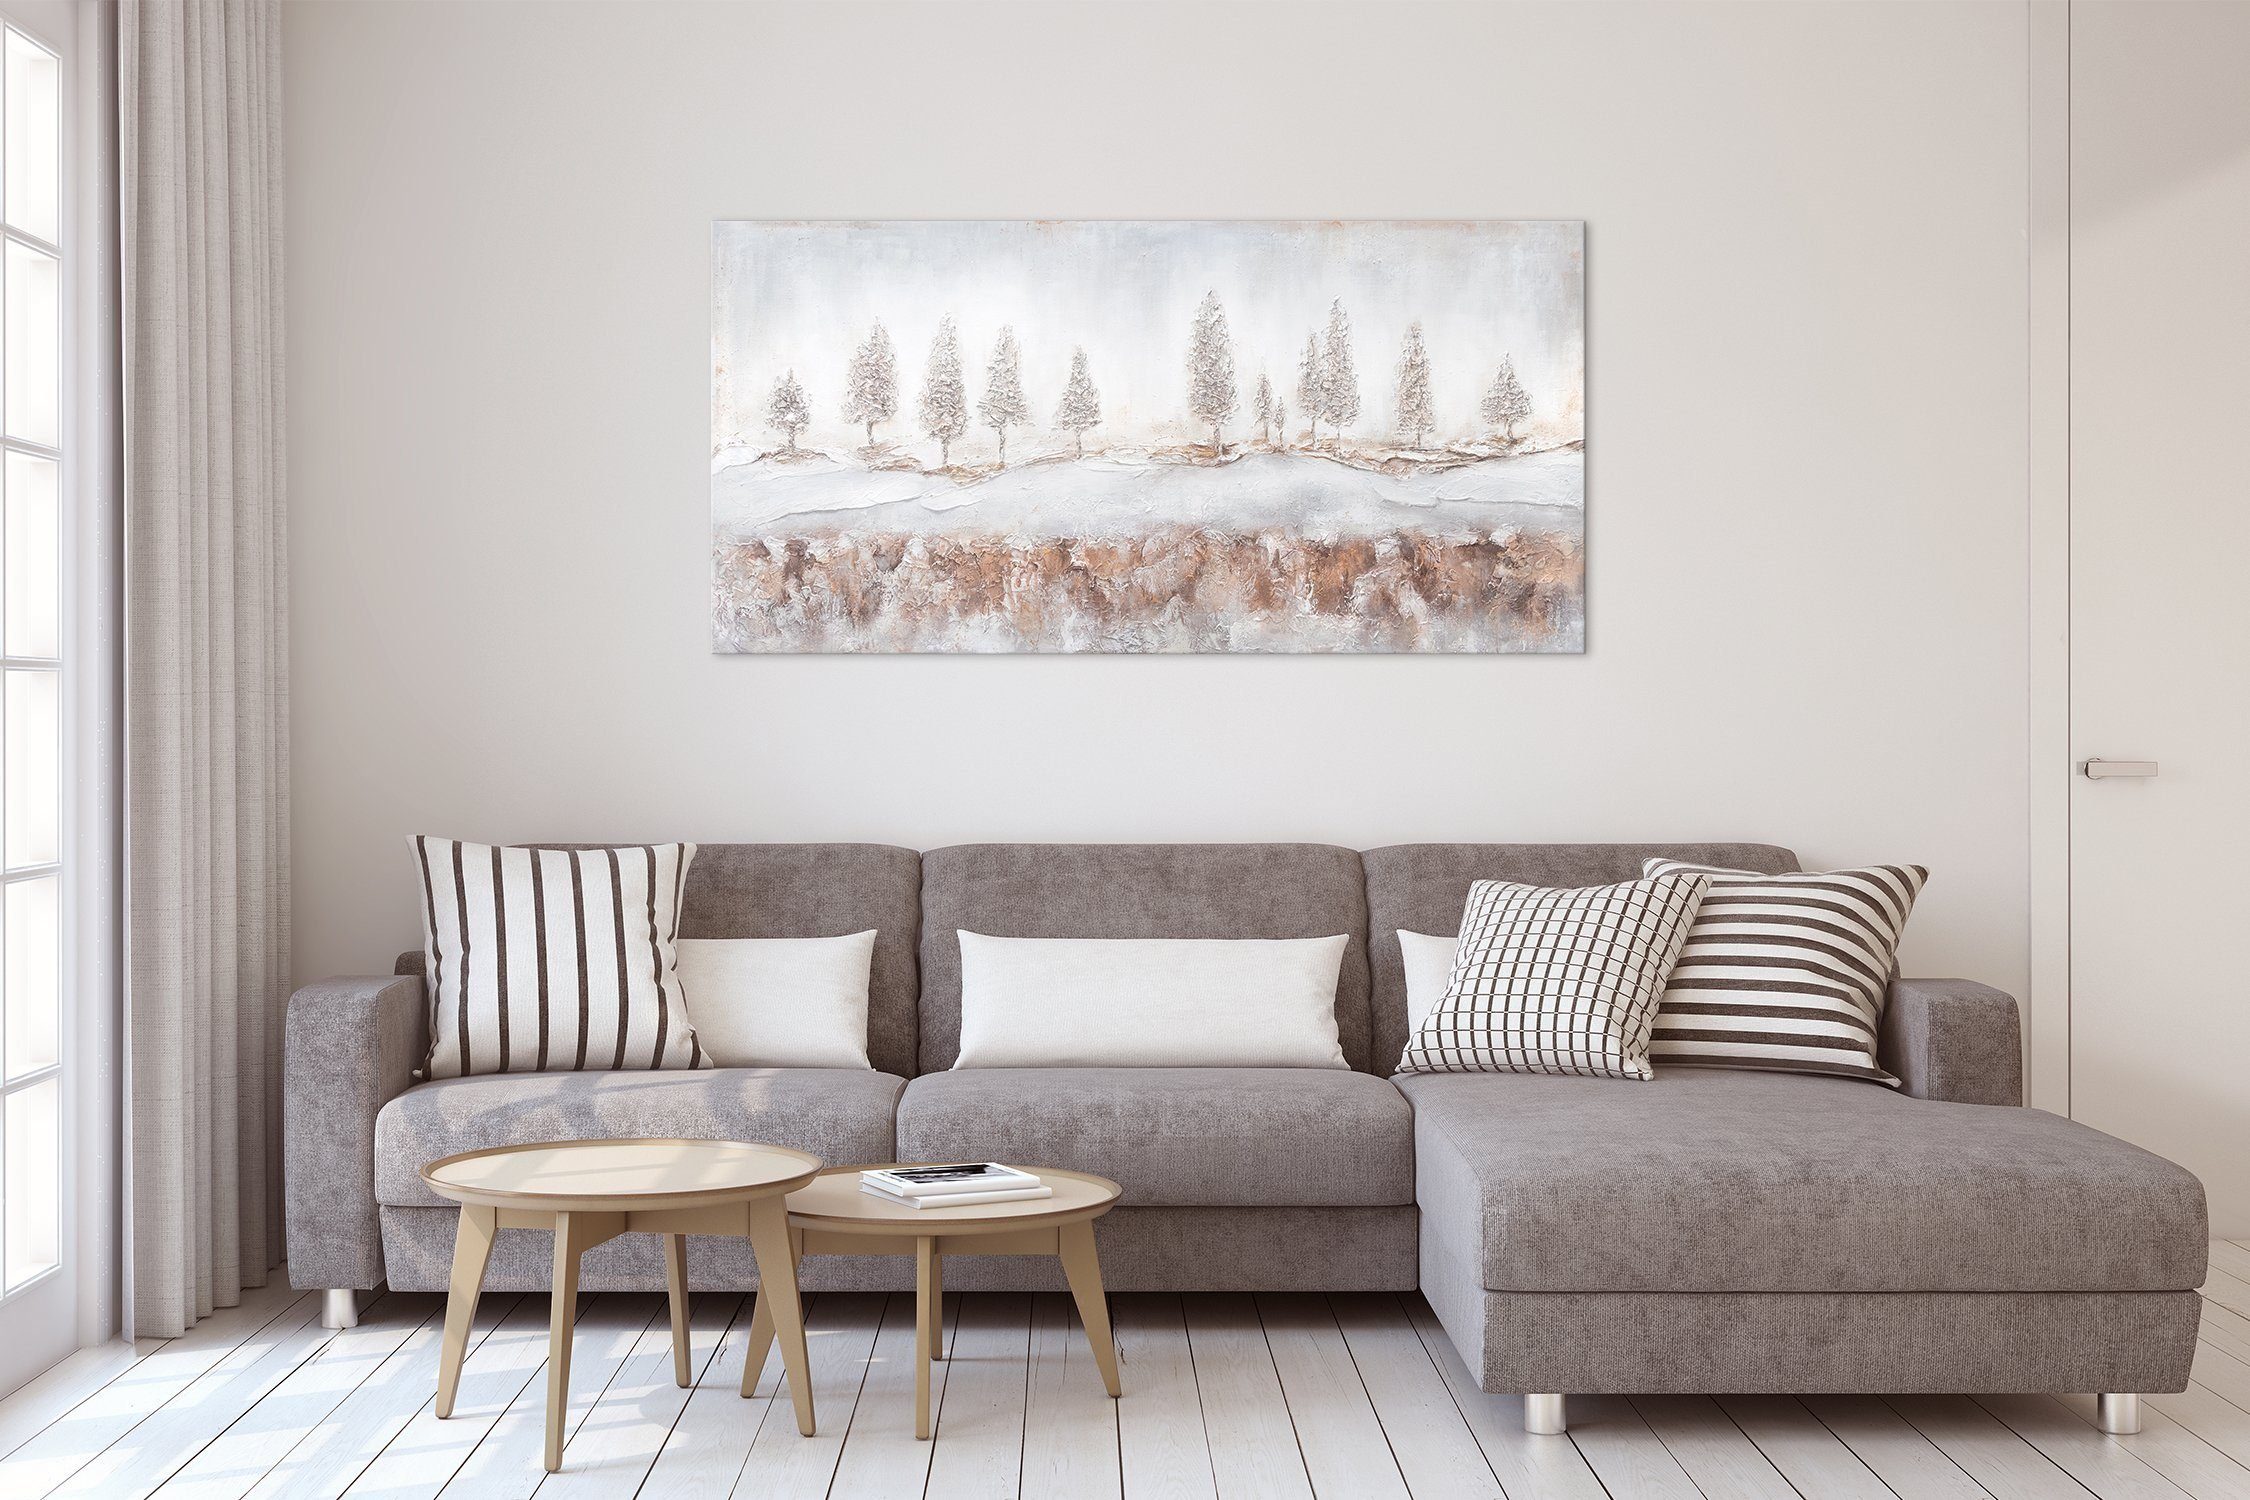 Leinwand Bild Wald Tannen Handgemalt Nebelig, Landschaftsbilder, Weiße YS-Art Gemälde